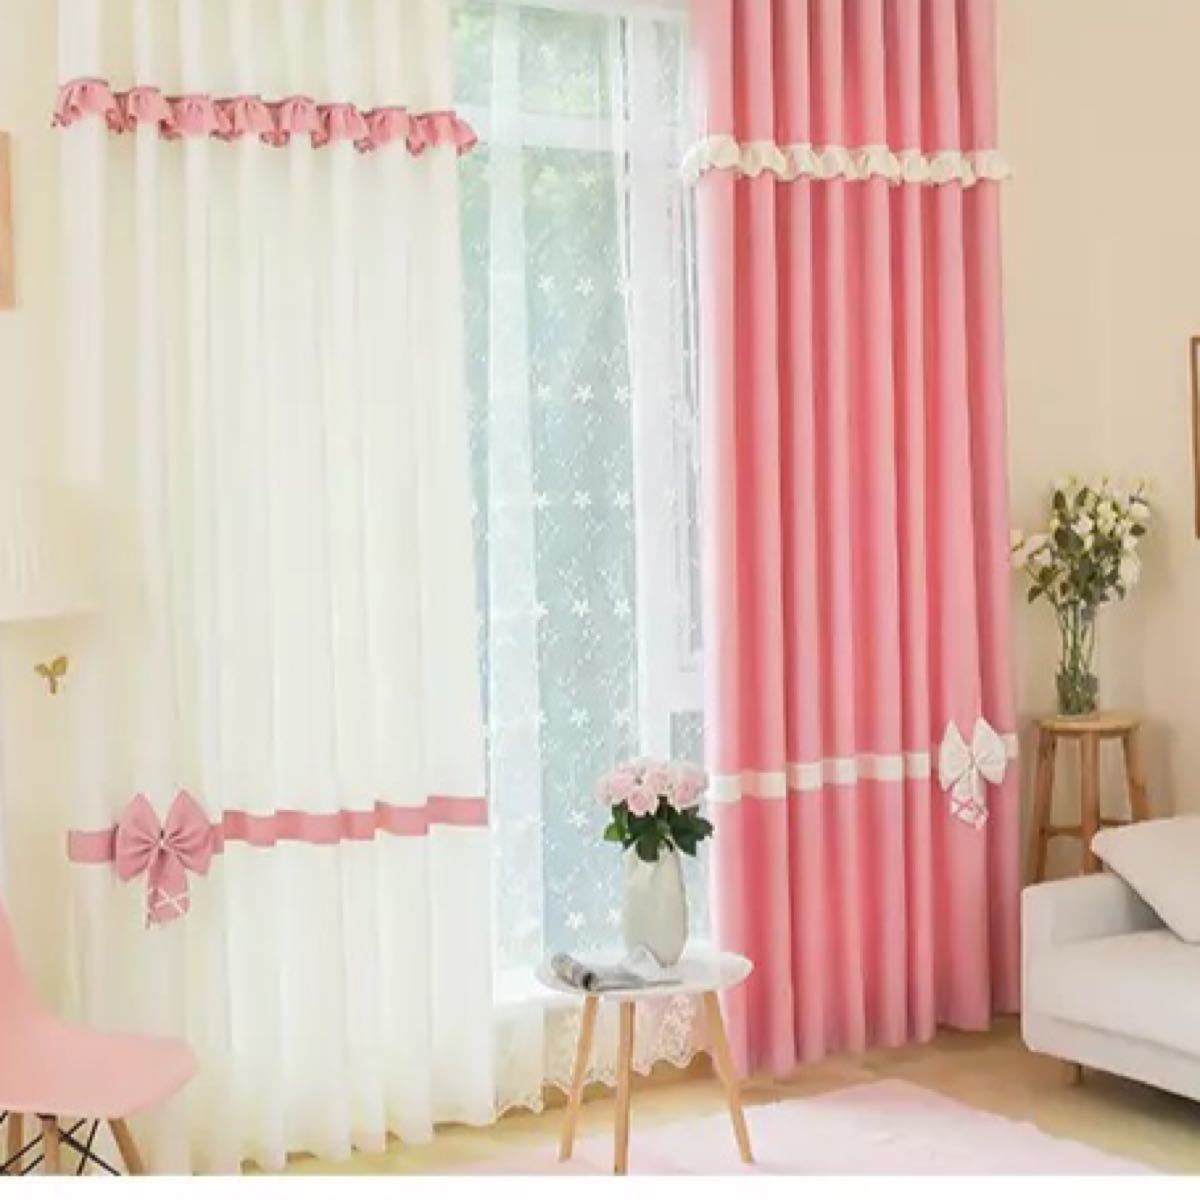 ドレープカーテン 遮光カーテン UVカット 姫系 遮 カーテン 子ども部屋 ピンク 可愛い おしゃれ  1セット 2枚入り 家 